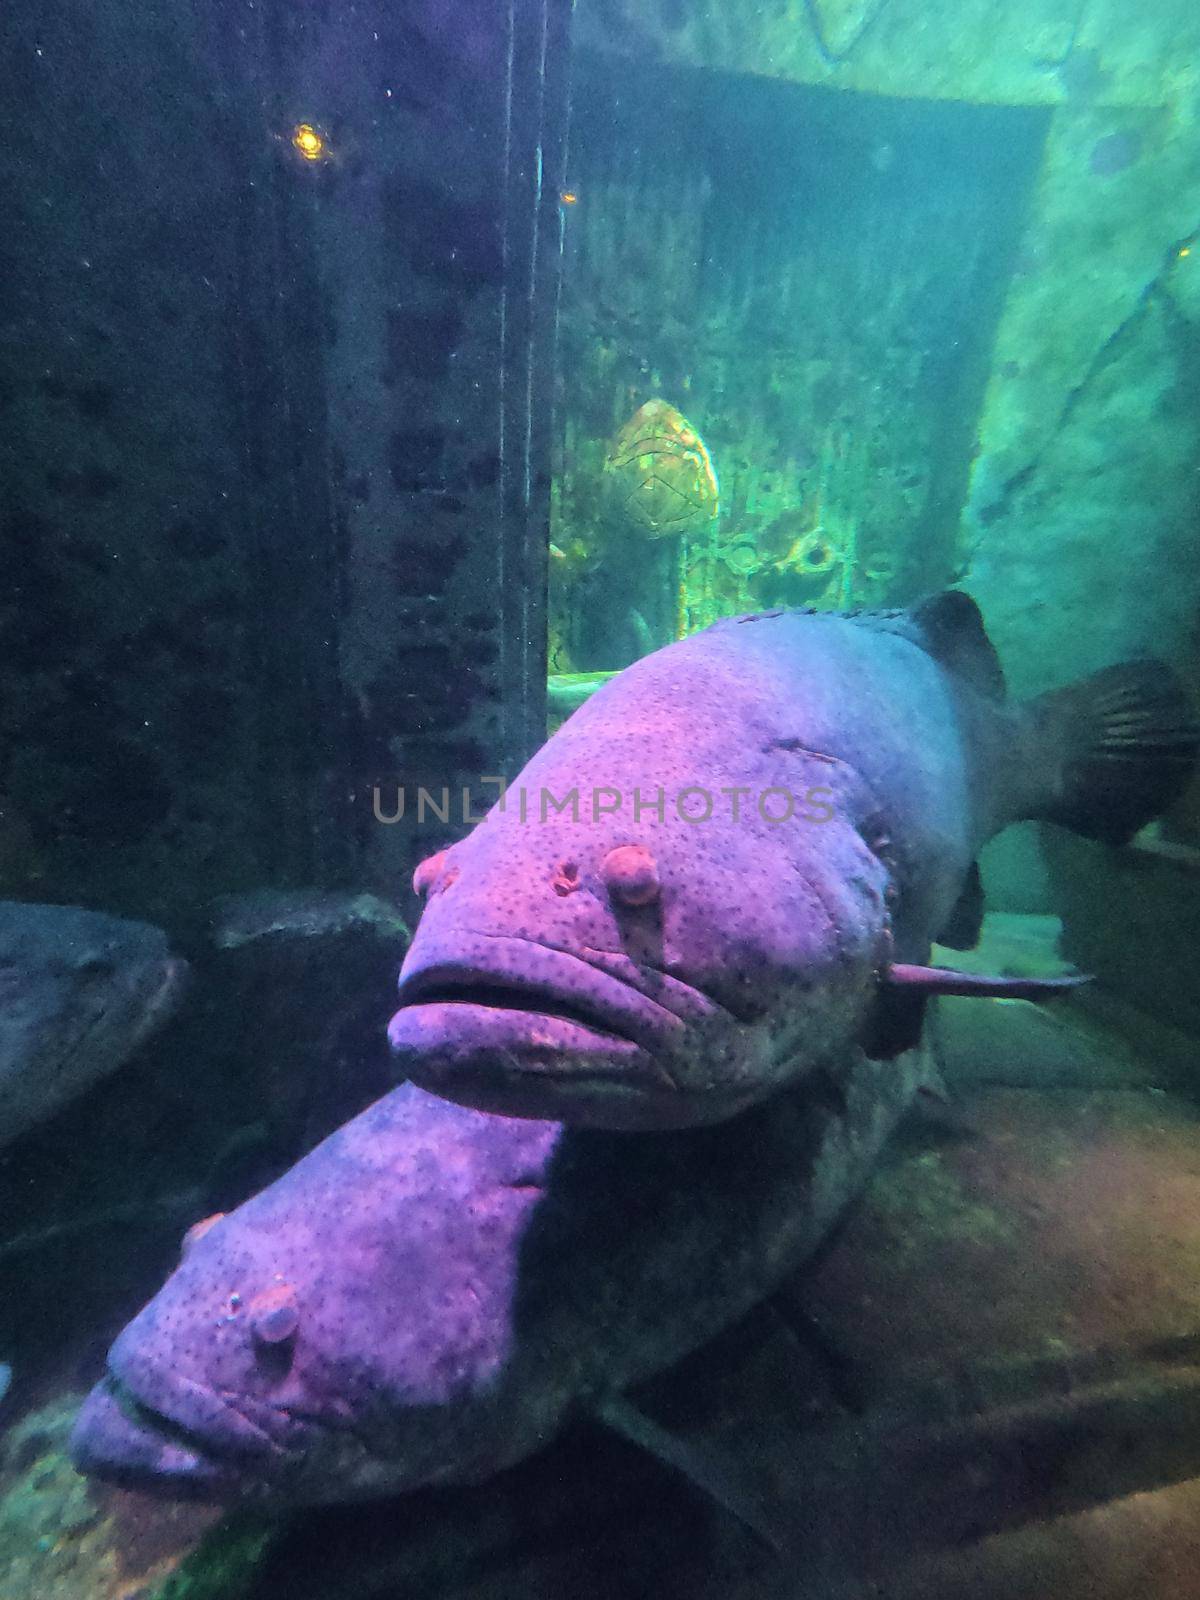 Image of Large purple fish in aquarium